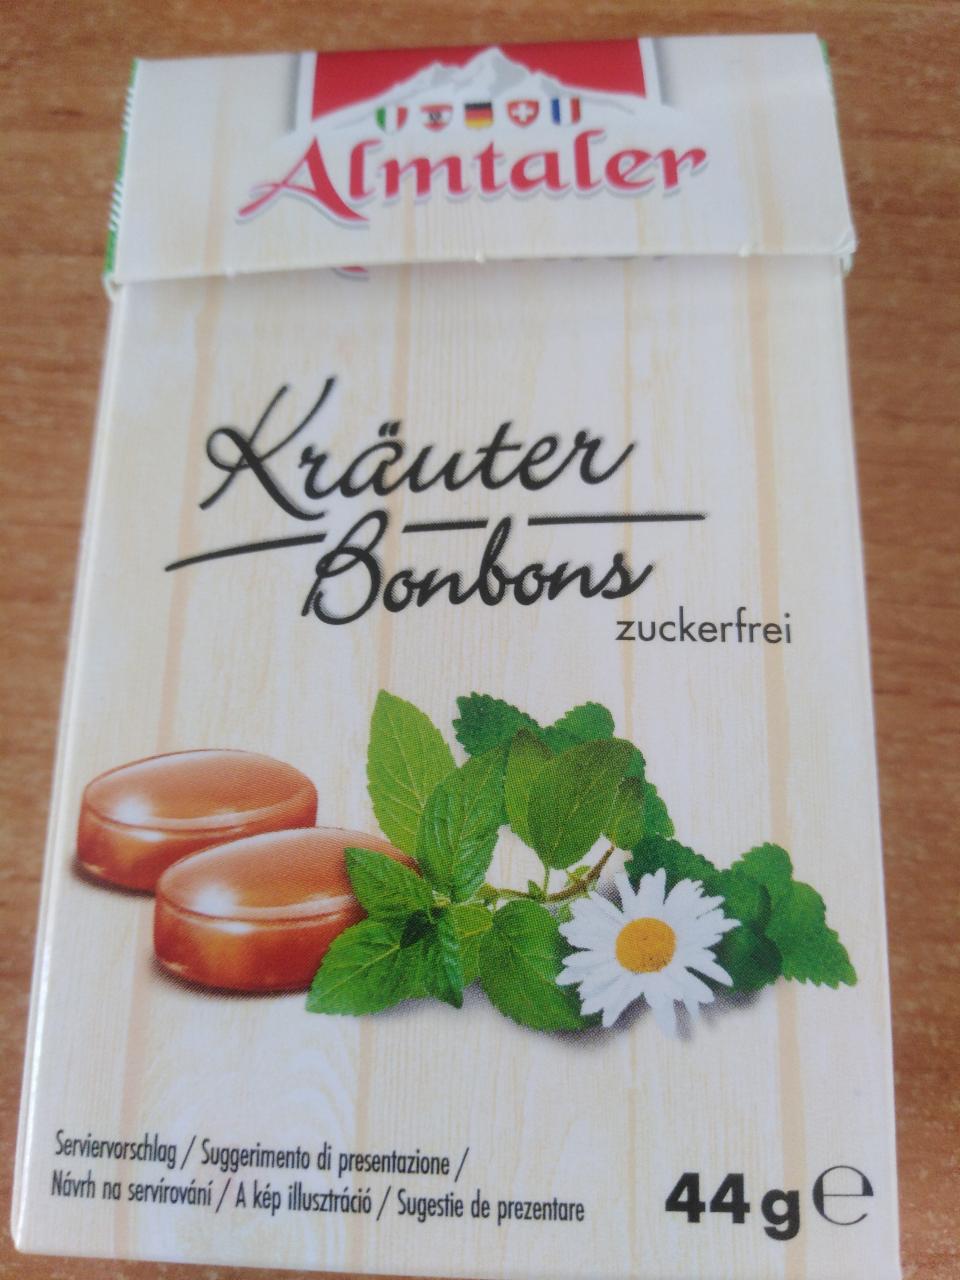 Fotografie - Kräuter bonbons Almtaler